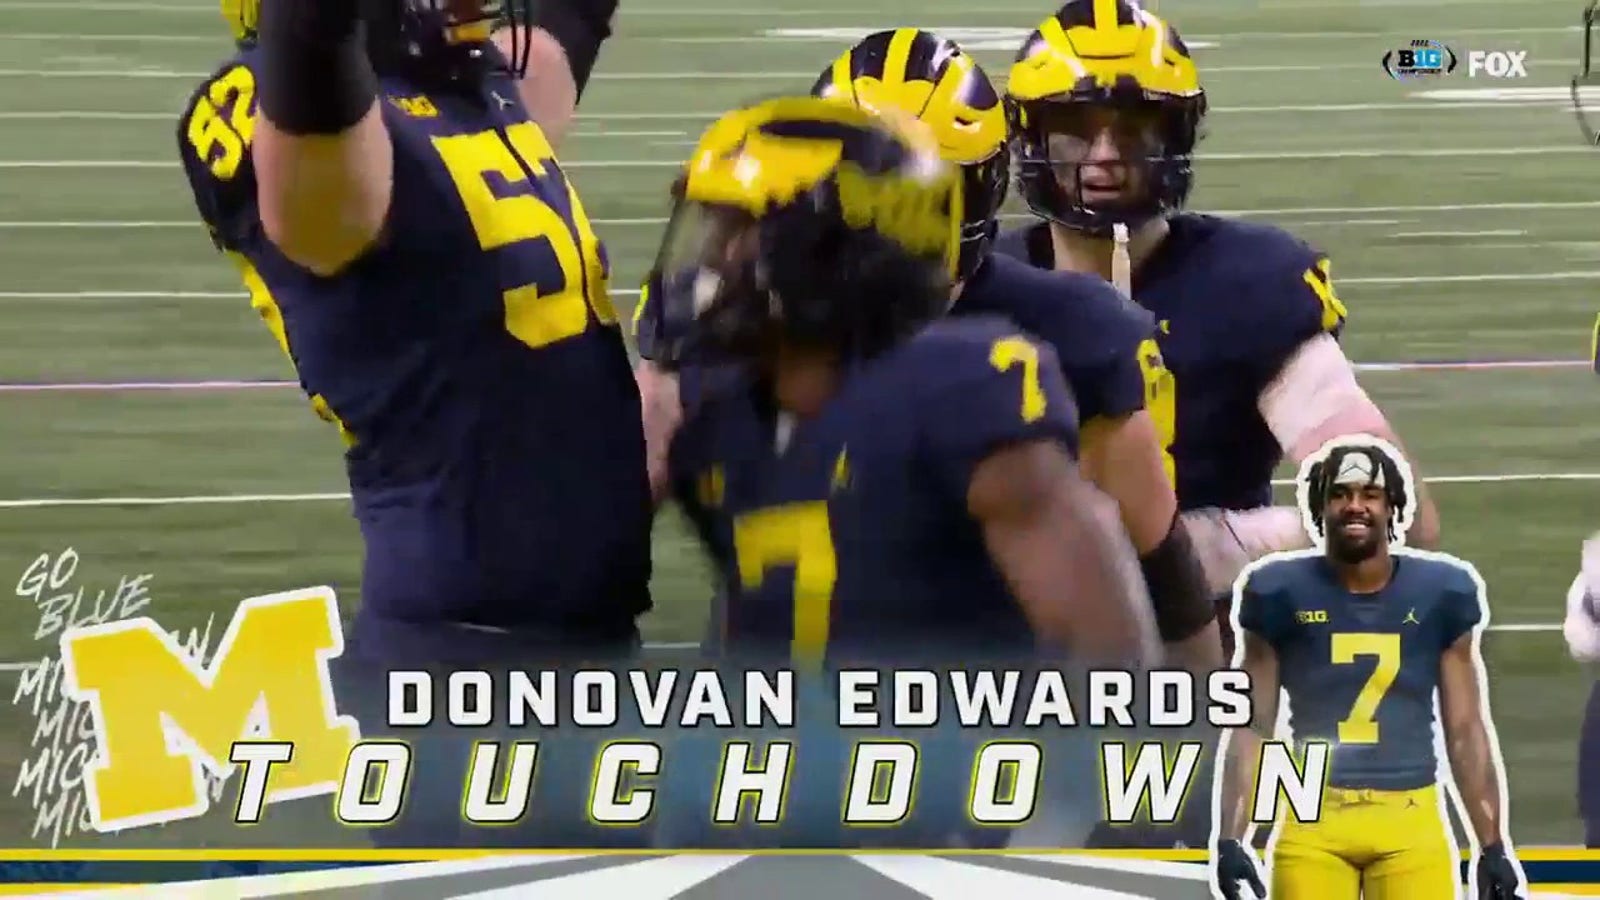 Donovan Edwards dashes for touchdown